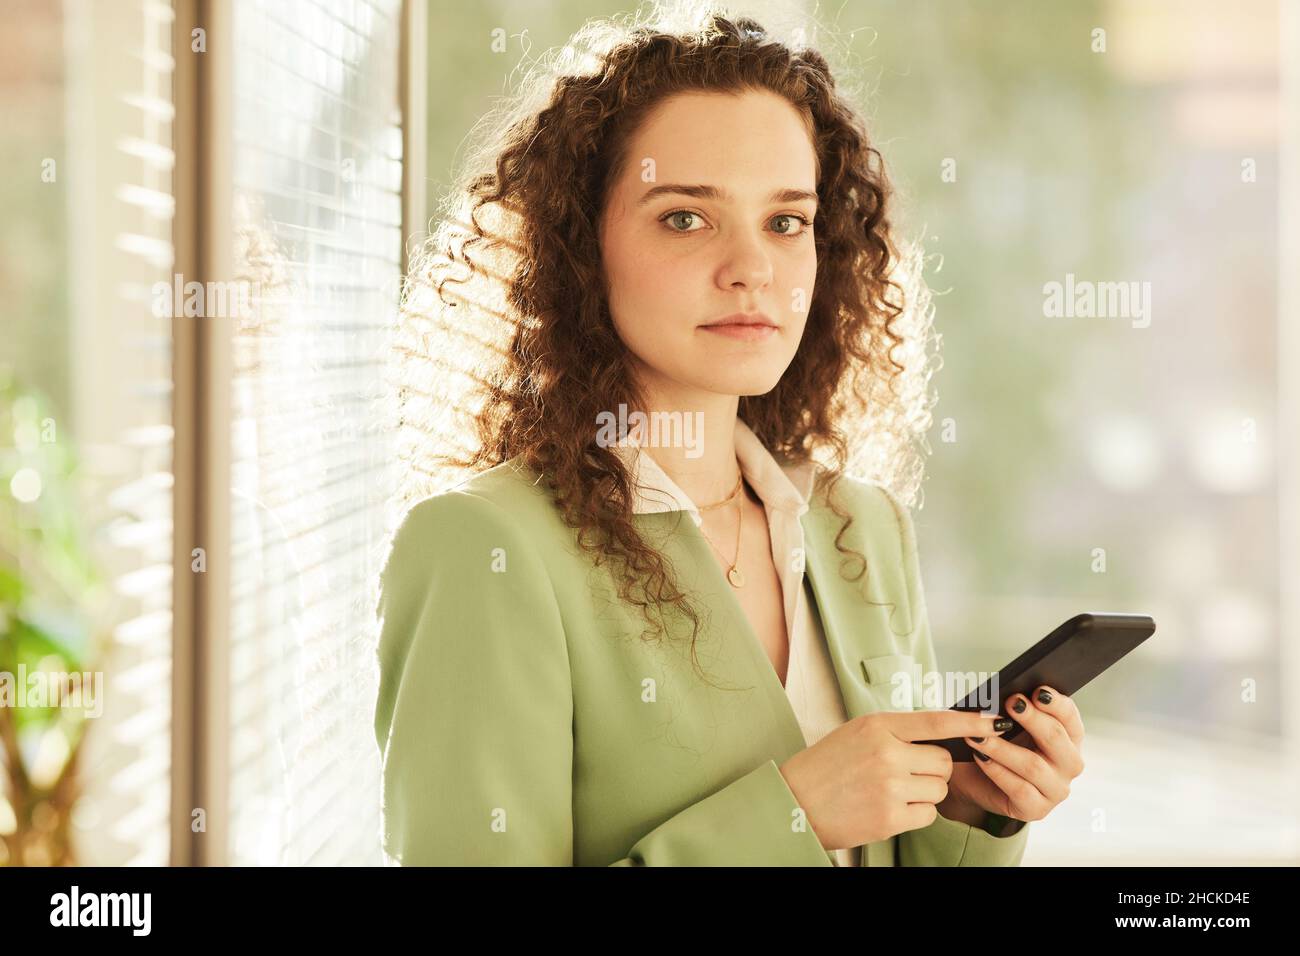 Horizontale, mittlere Nahaufnahme einer attraktiven jungen kaukasischen Frau, die im modernen Büro mit dem Smartphone und der Kamera steht Stockfoto